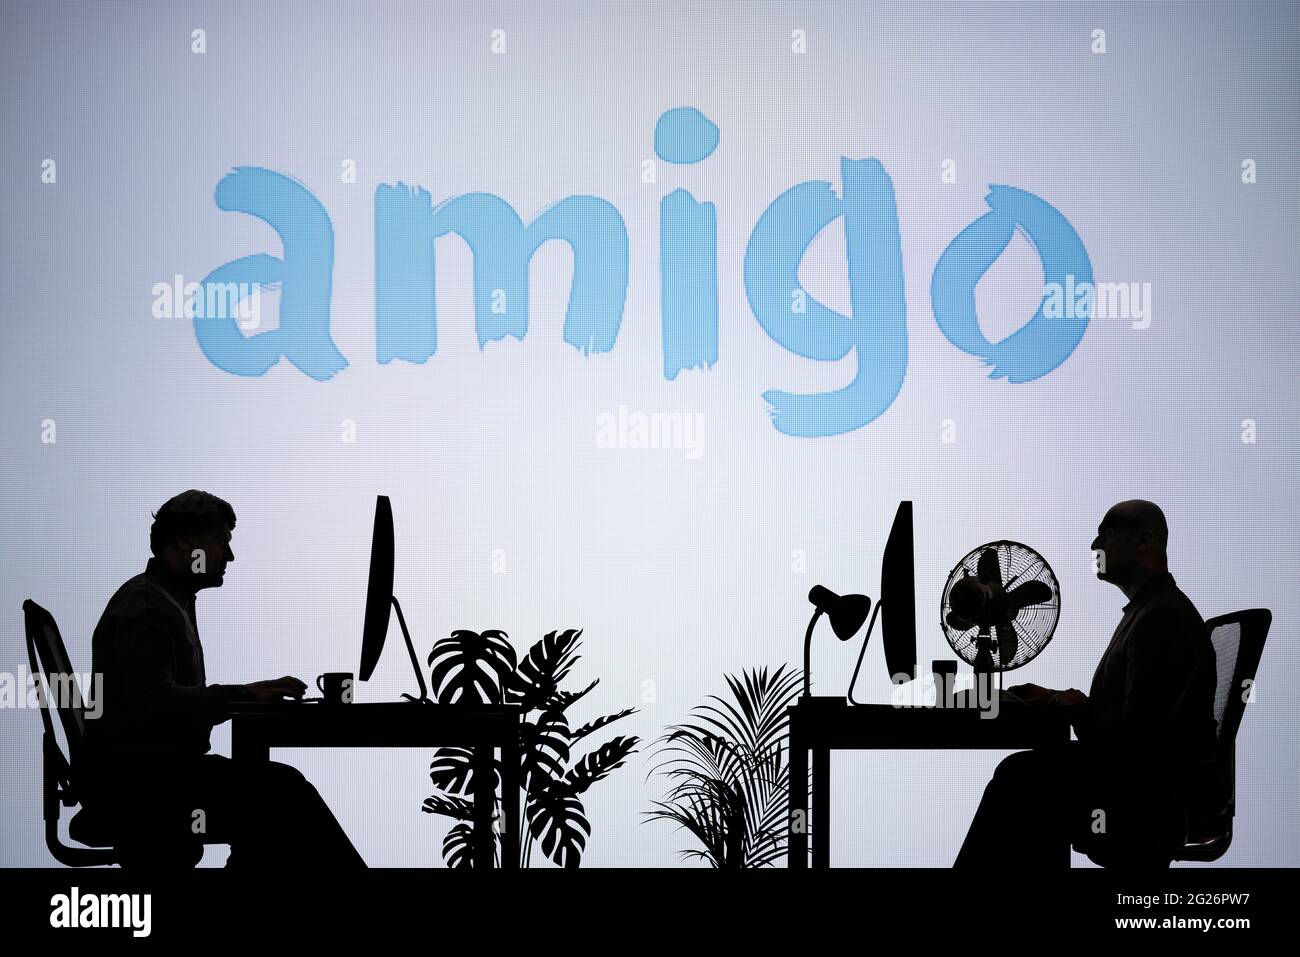 Le logo Amigo Loans est visible sur un écran LED en arrière-plan tandis que deux personnes silhouetées travaillent dans un environnement de bureau (usage éditorial uniquement) Banque D'Images